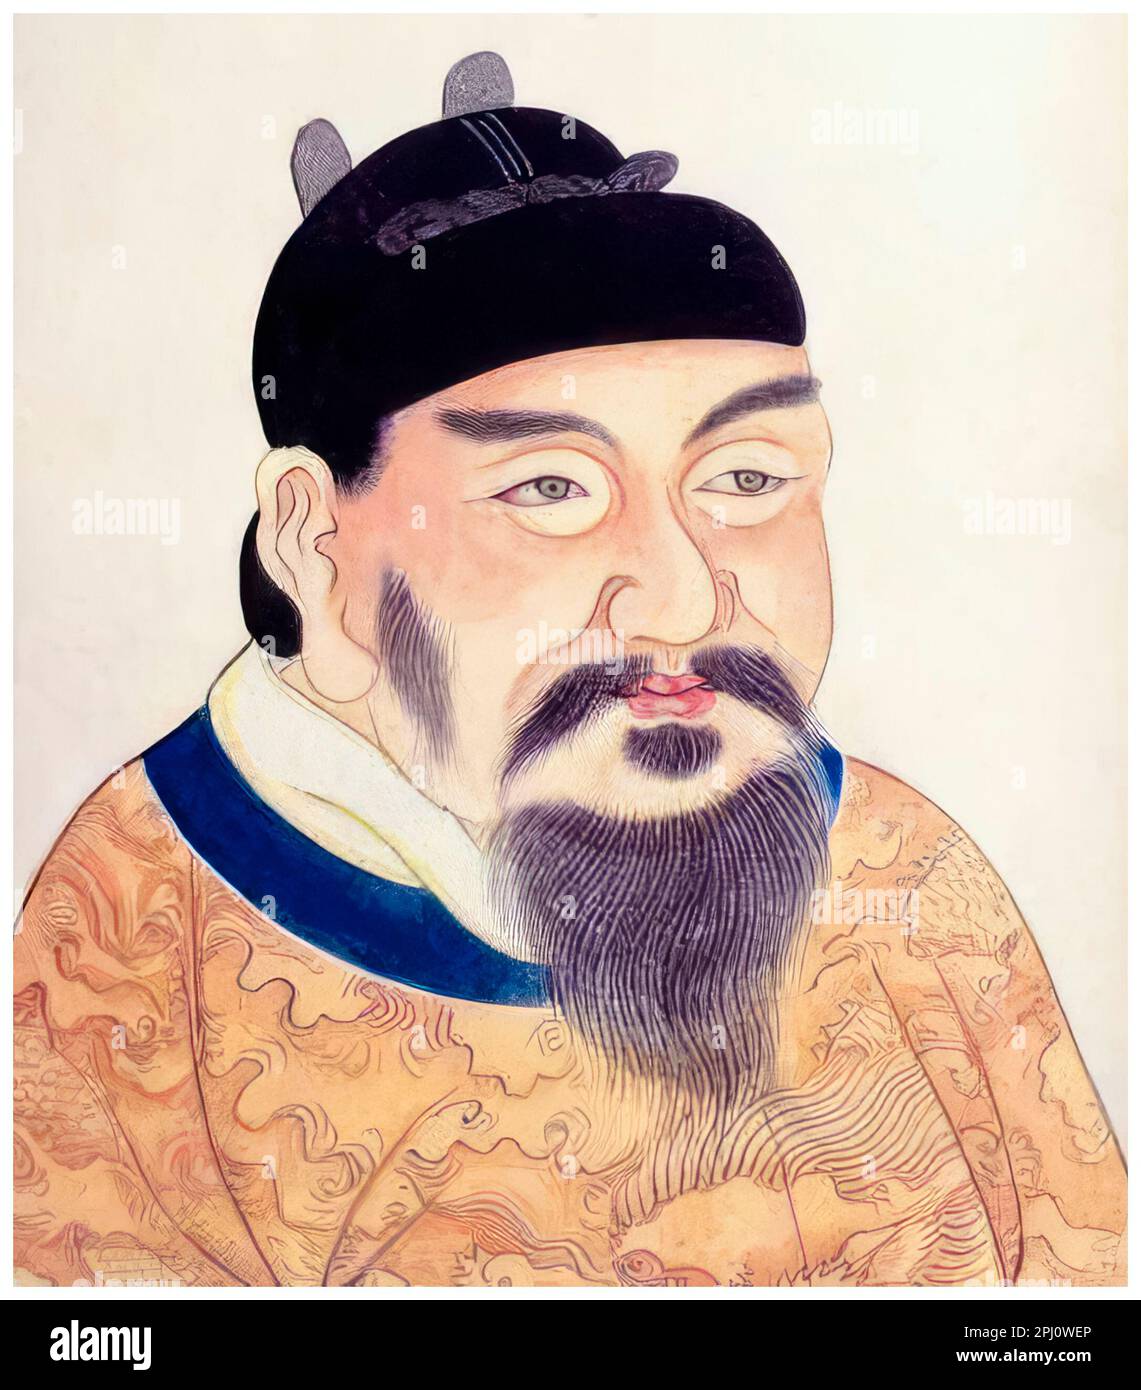 Empereur Gaozong de Tang (628-683), troisième empereur chinois de la dynastie Tang, portrait peint avant 1799 Banque D'Images